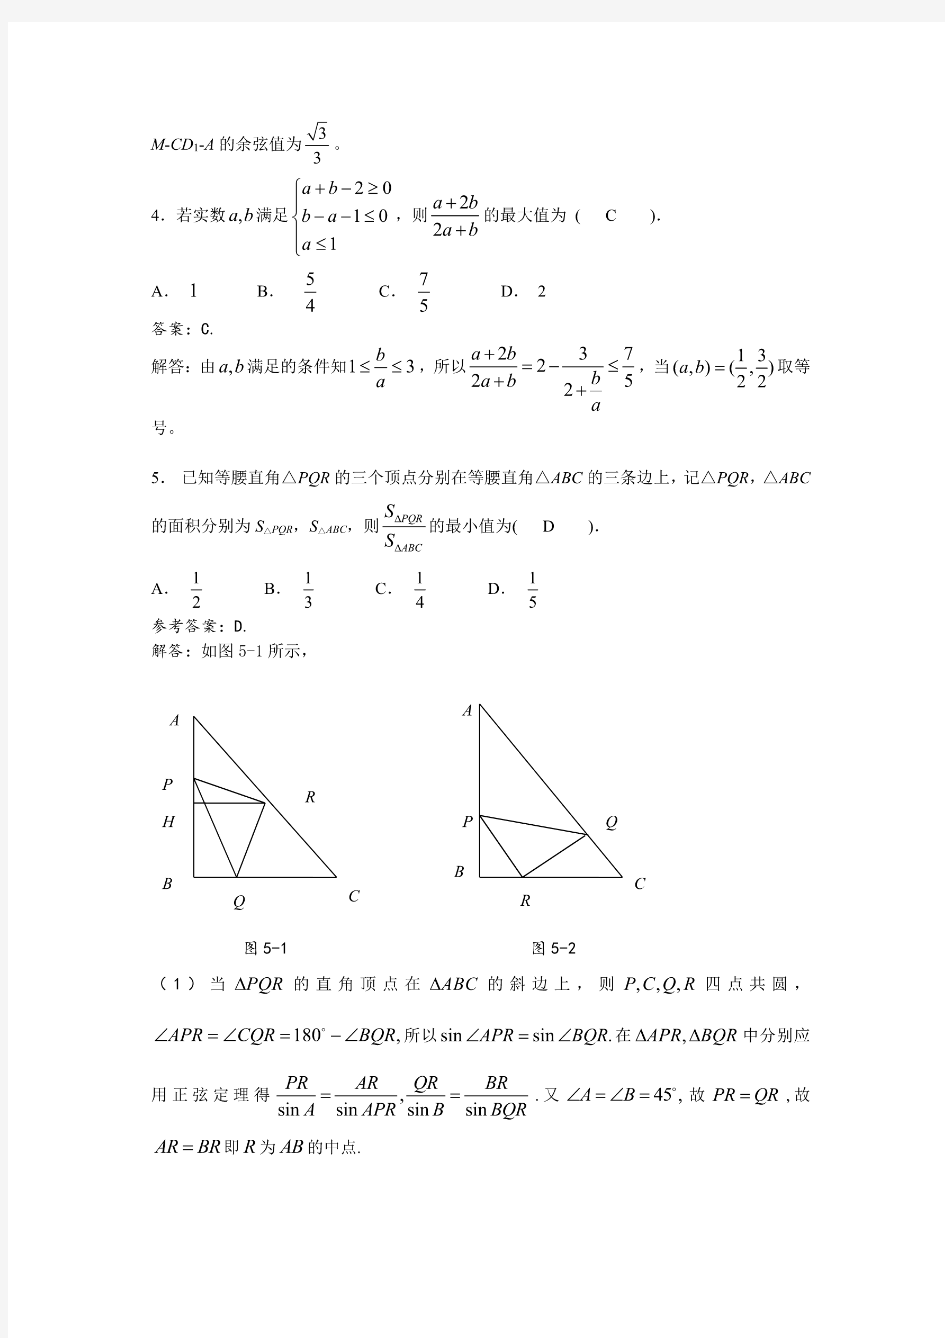 2015年浙江省高中数学竞赛试卷及参考答案